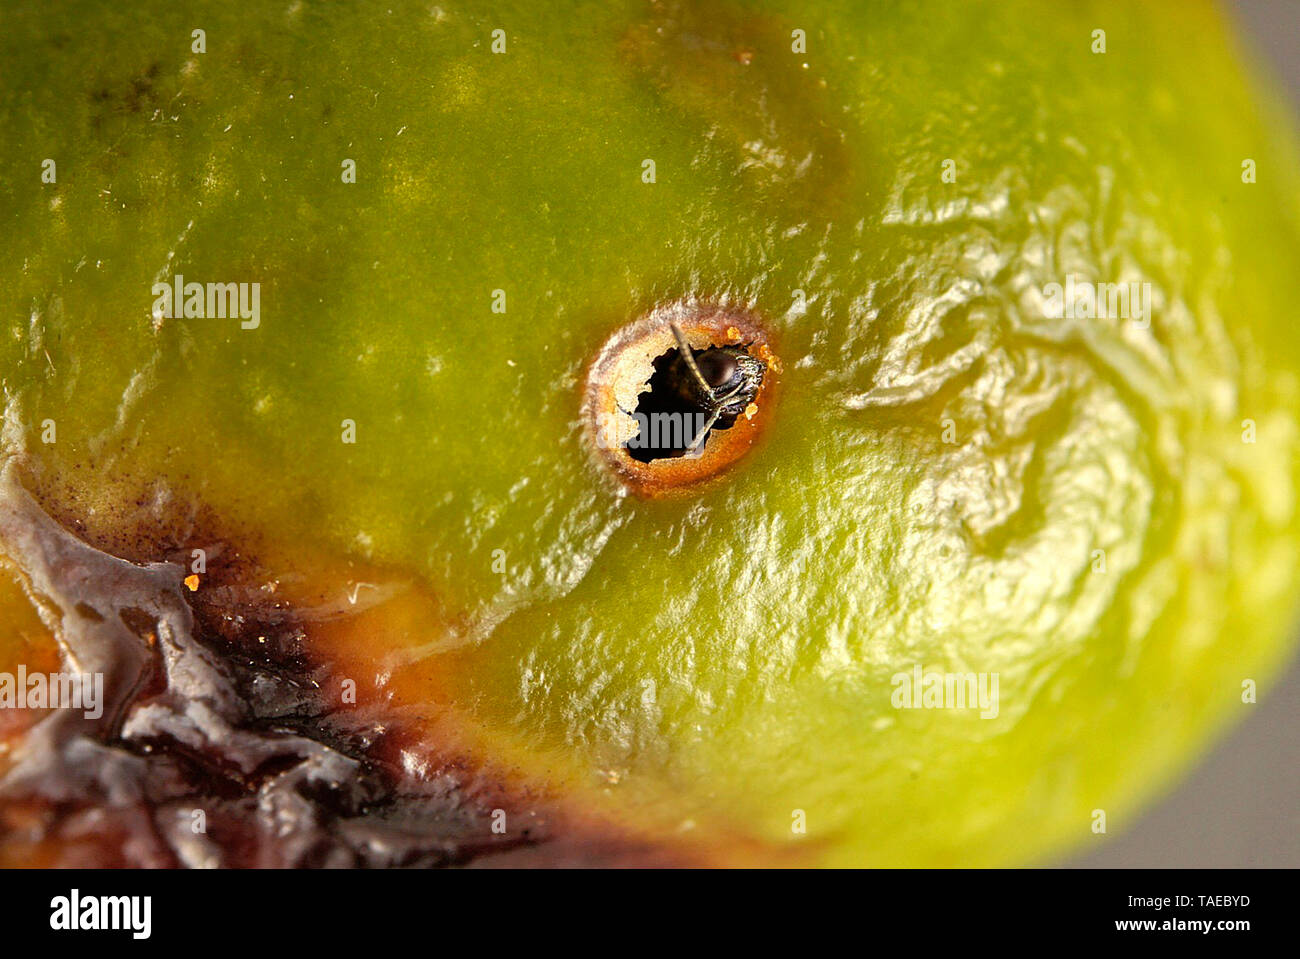 Aparición del parasitoide (Eupelmus confusus) desde una galería de la mosca del olivo. El parasitoide nibbles la película de la Oliva para salir. Foto de stock